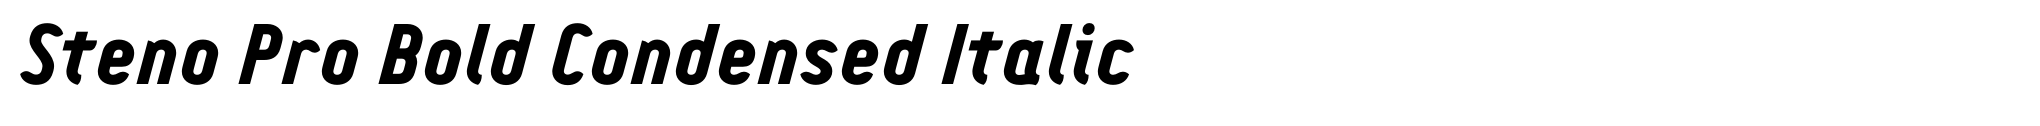 Steno Pro Bold Condensed Italic image